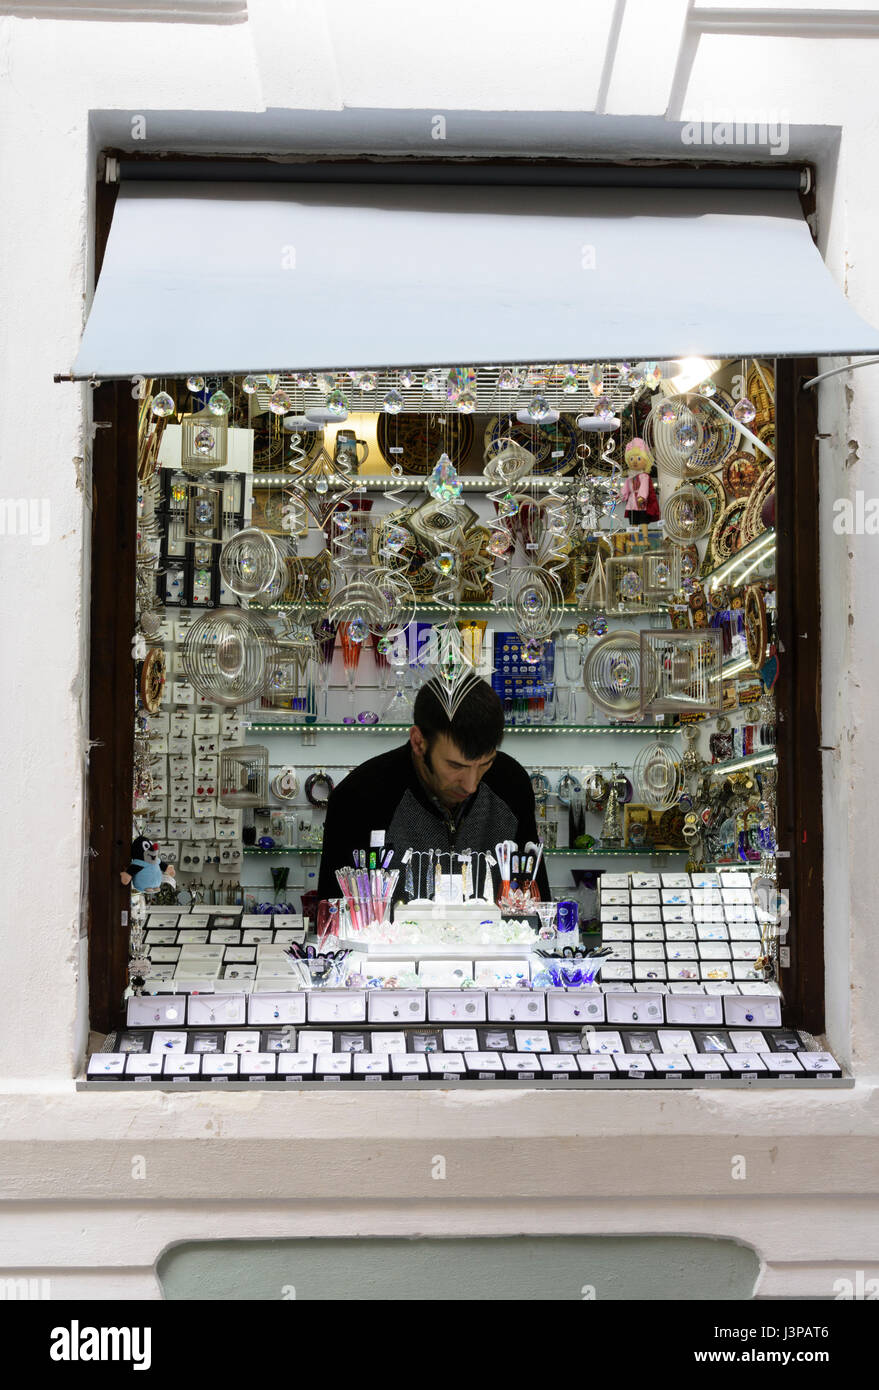 Negoziante fra il suo display del cristallo di Boemia negozio di souvenir. Praga, Repubblica Ceca. Foto Stock